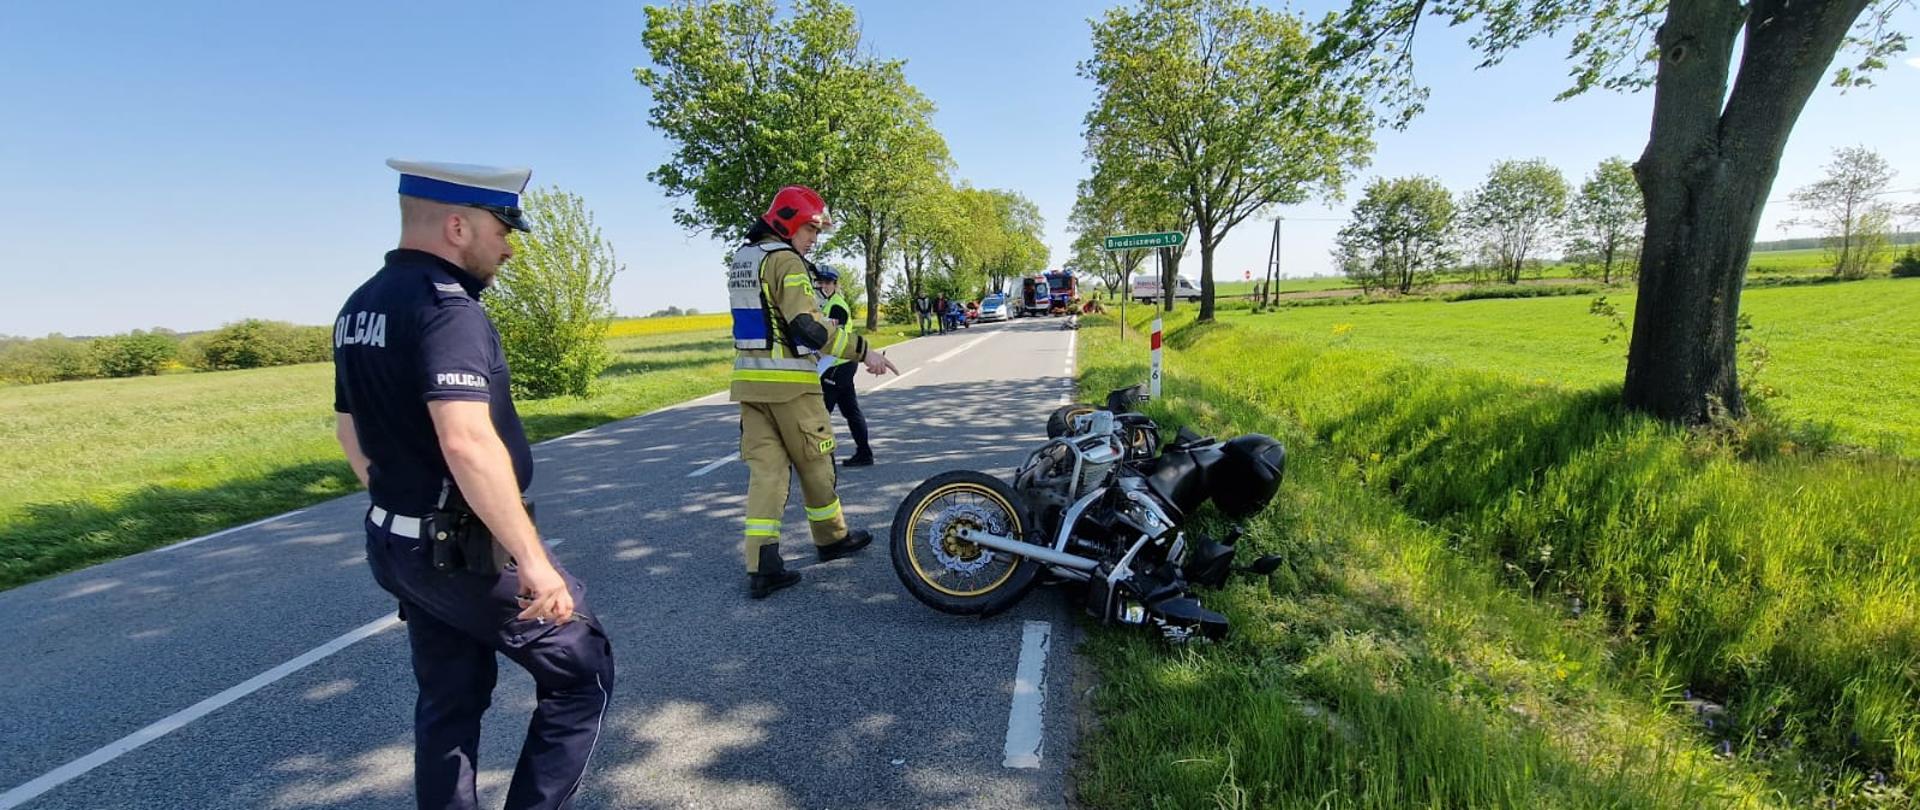 Widać uszkodzony motocykl na poboczu drogi, w pobliżu strażak i policjant